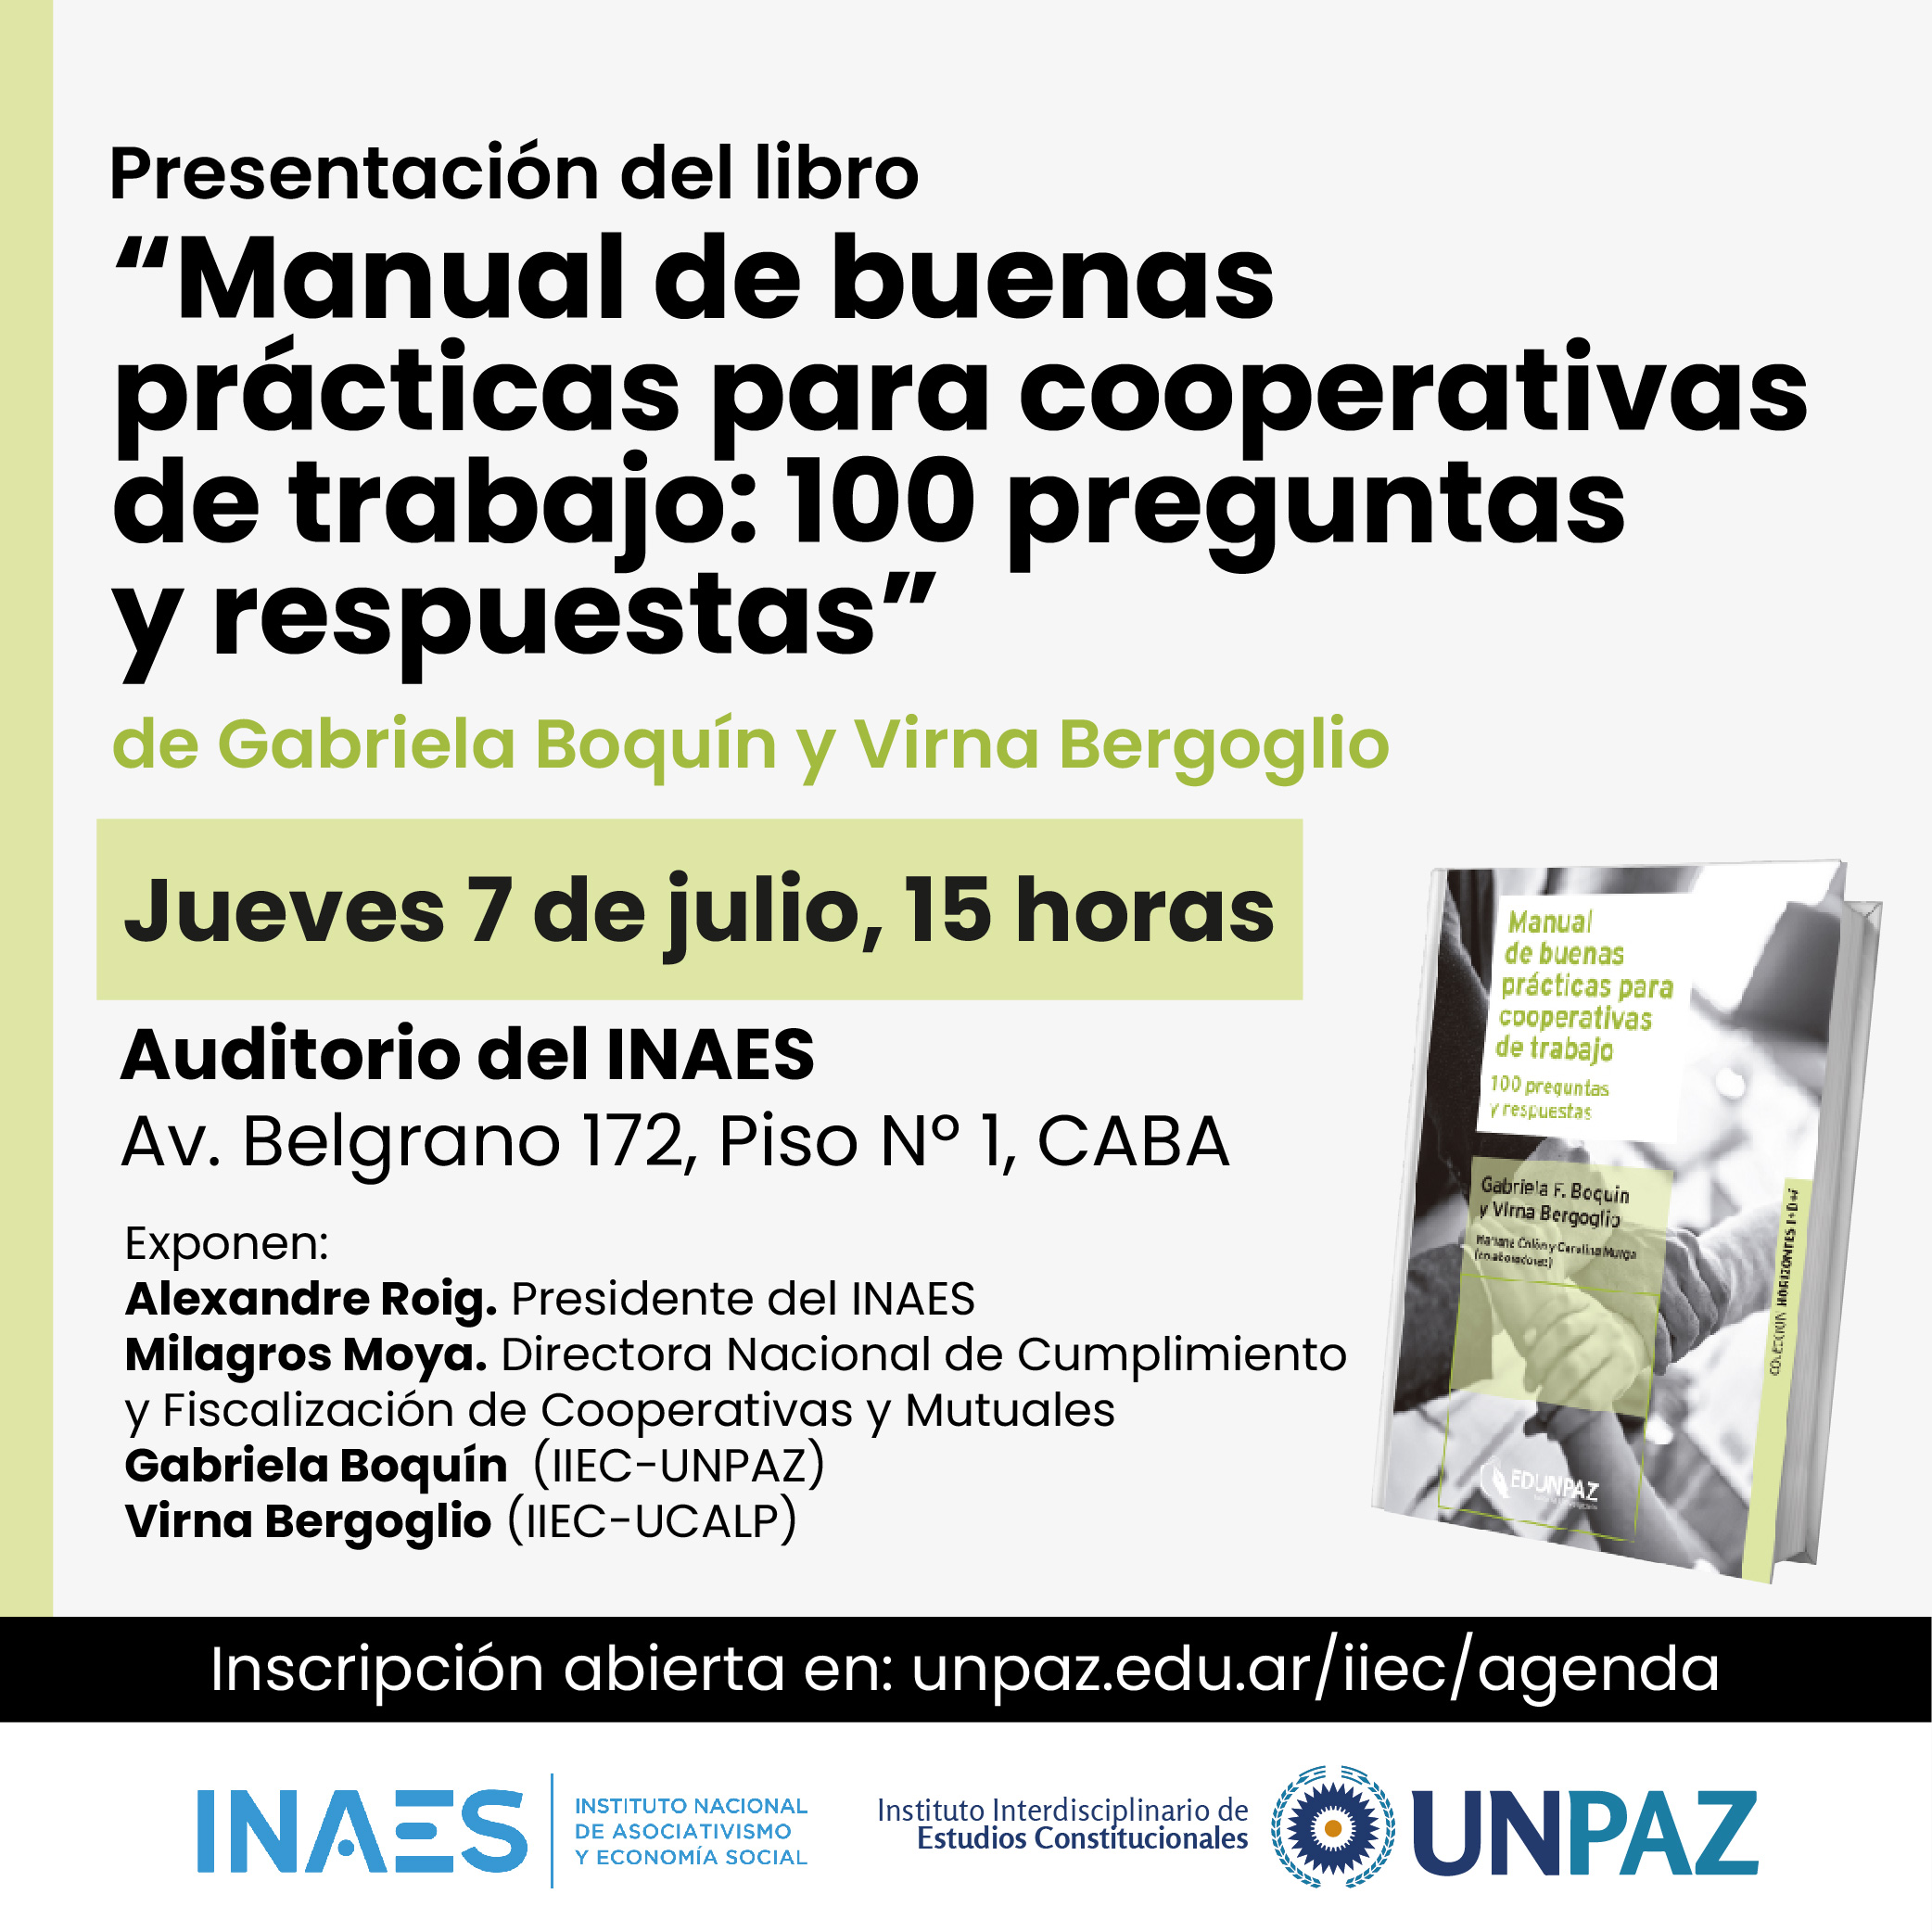 Se presentará el libro “Manual de buenas prácticas para cooperativas de trabajo” en el auditorio del INAES